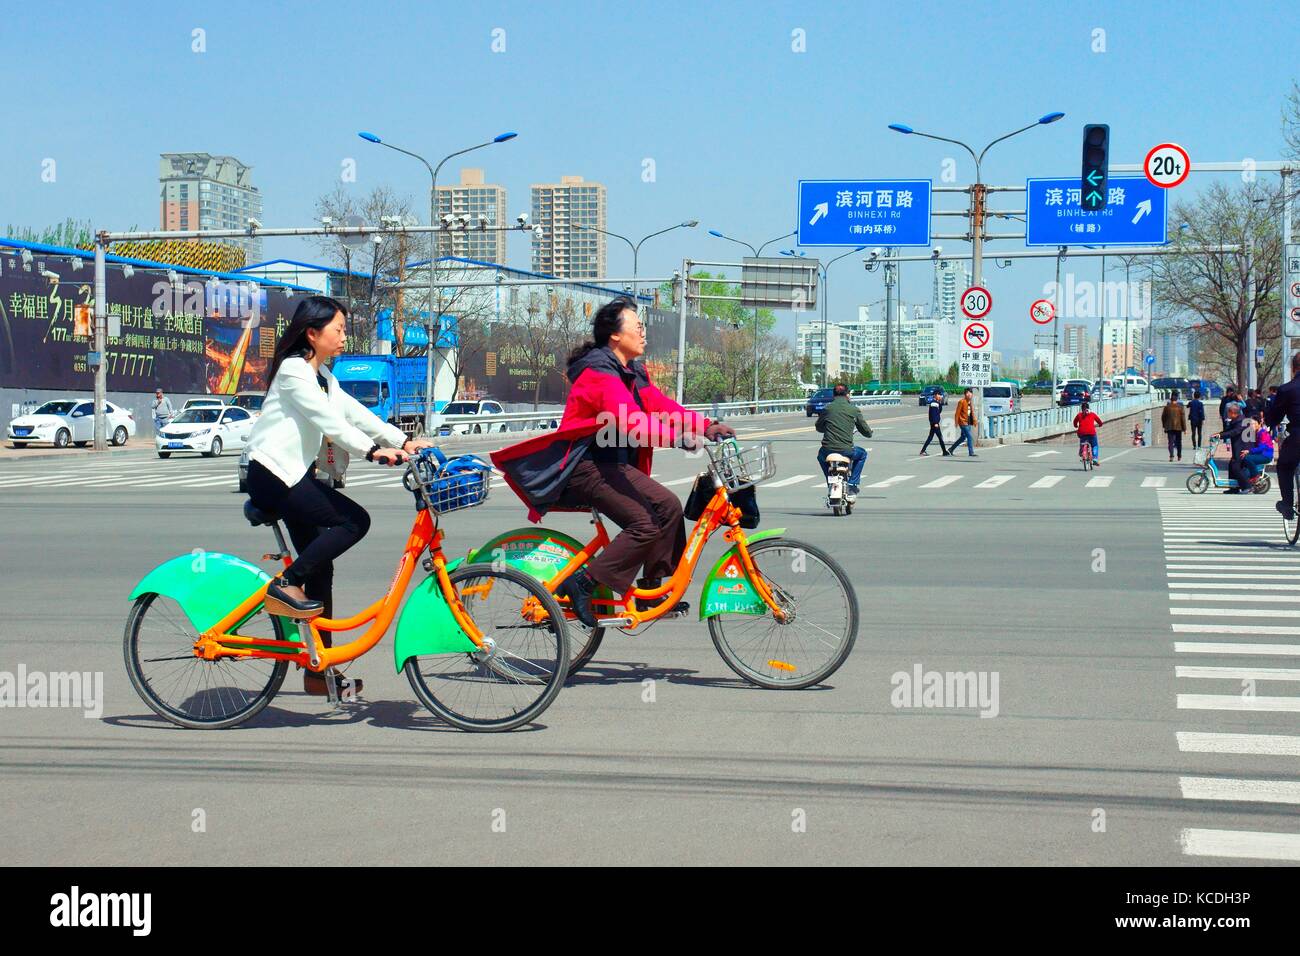 Radfahrer China nutzen öffentliche Fahrrad Bike Sharing share system Fahrräder in Kunshan City street Provinz Shanxi. Chinesische transport verkehr Straße Kreuzung Stockfoto